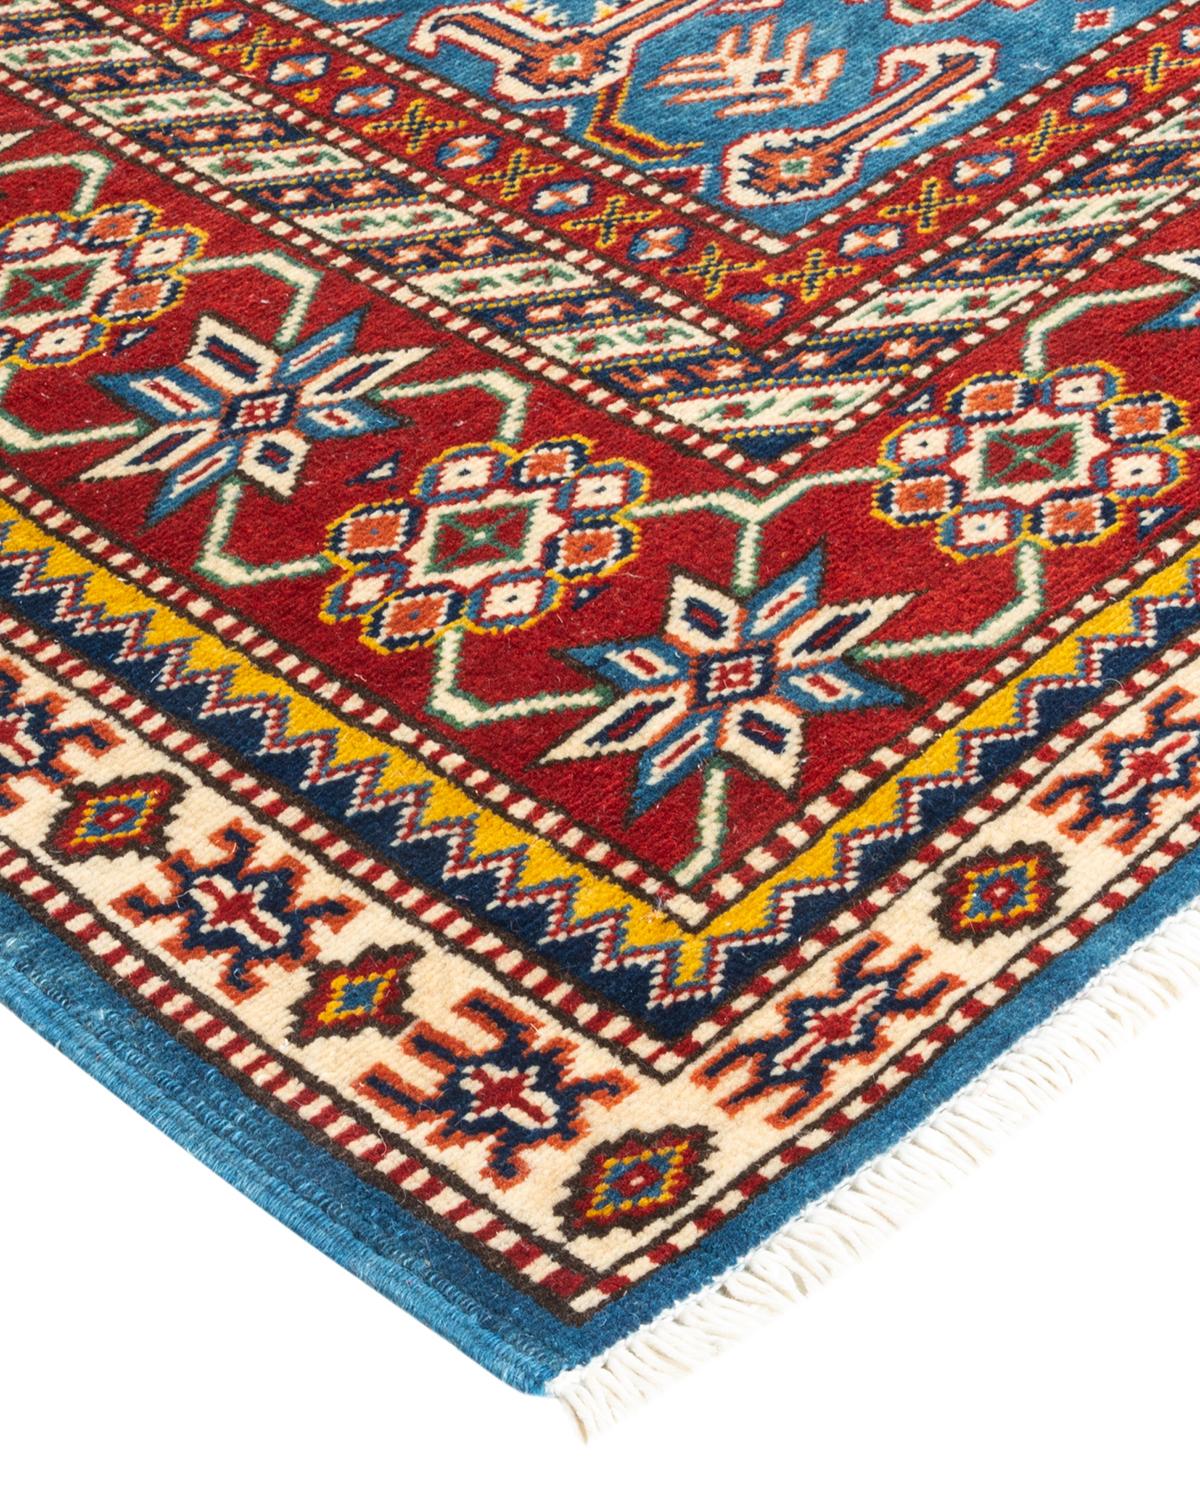 La riche tradition textile de l'Afrique occidentale a inspiré la collection Tribal de tapis de grande qualité. Incorporant un mélange de motifs géométriques, dans des palettes allant de la terre à la vivacité, ces tapis apportent un sentiment